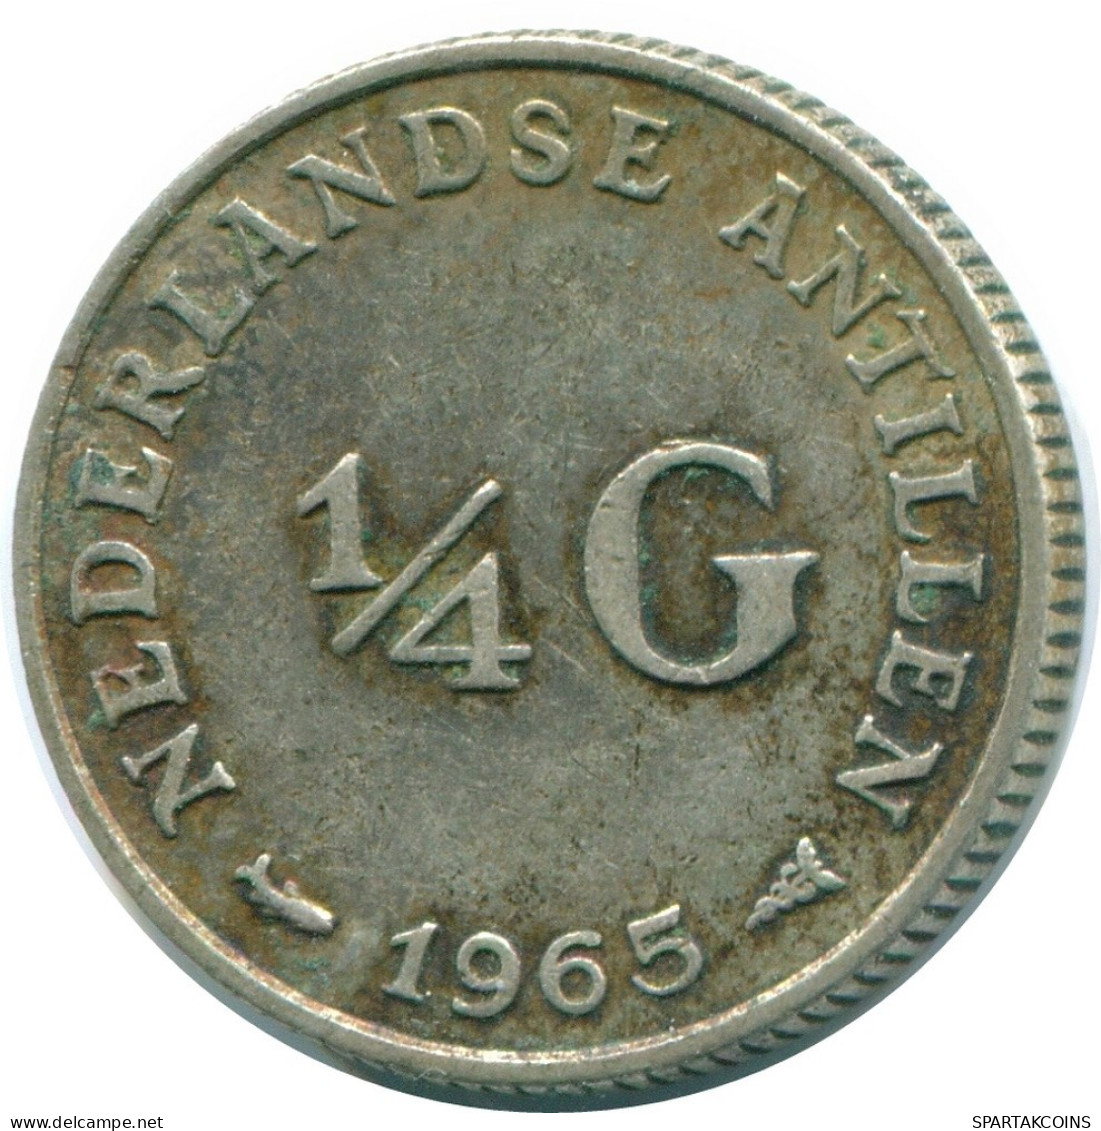 1/4 GULDEN 1965 NIEDERLÄNDISCHE ANTILLEN SILBER Koloniale Münze #NL11344.4.D.A - Nederlandse Antillen